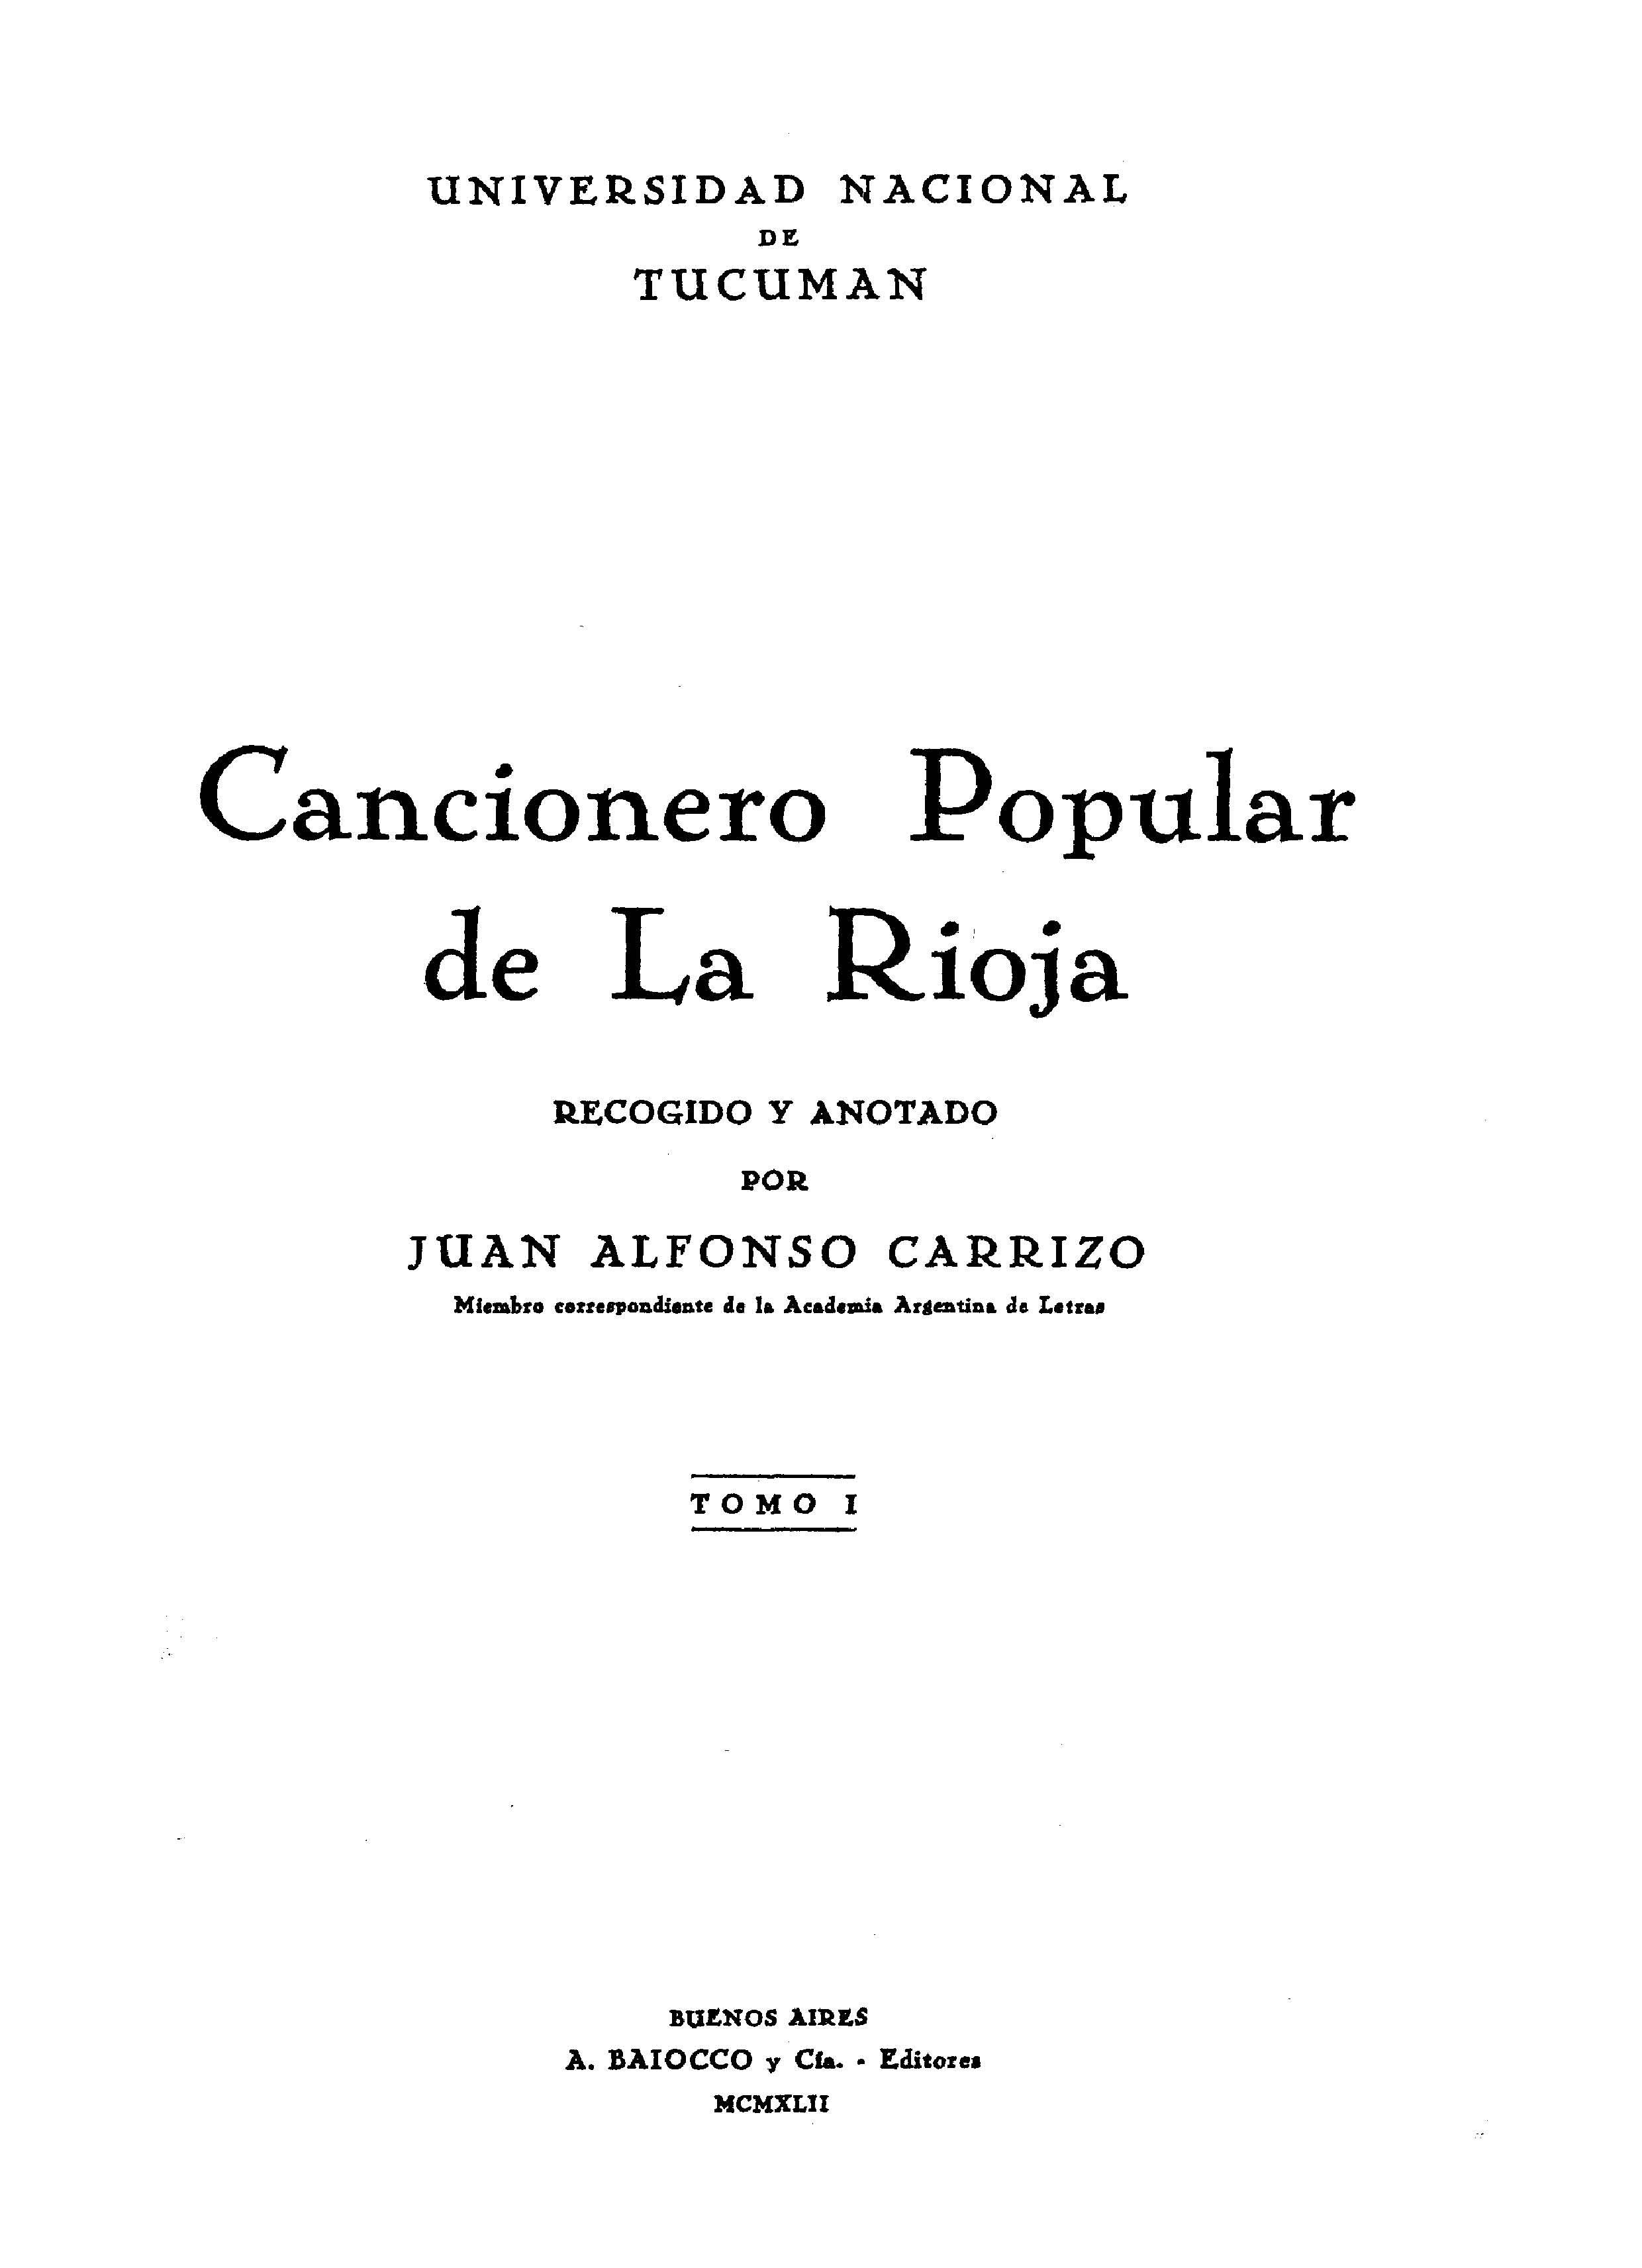 Cancionero popular de La Rioja. Tomo I / recogido y anotado por Juan Alfonso Carrizo | Biblioteca Virtual Miguel de Cervantes